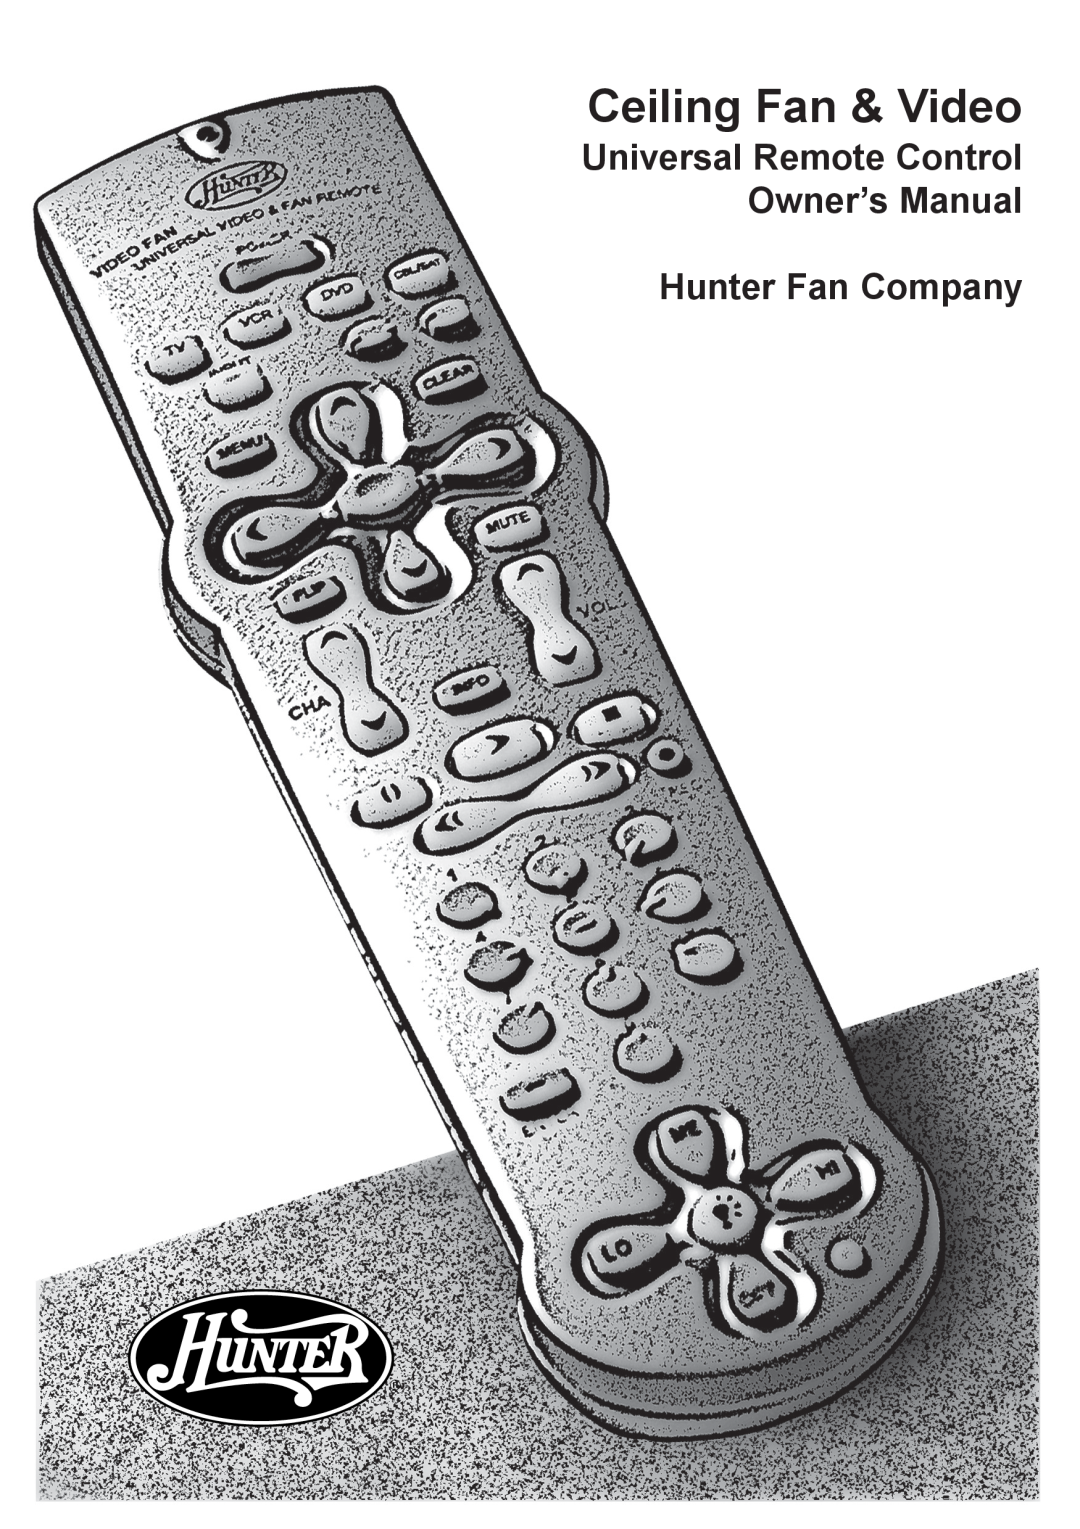 Hunter Fan 41536-01, 27177 owner manual Hunter Fan Company, Ceiling Fan & Video 